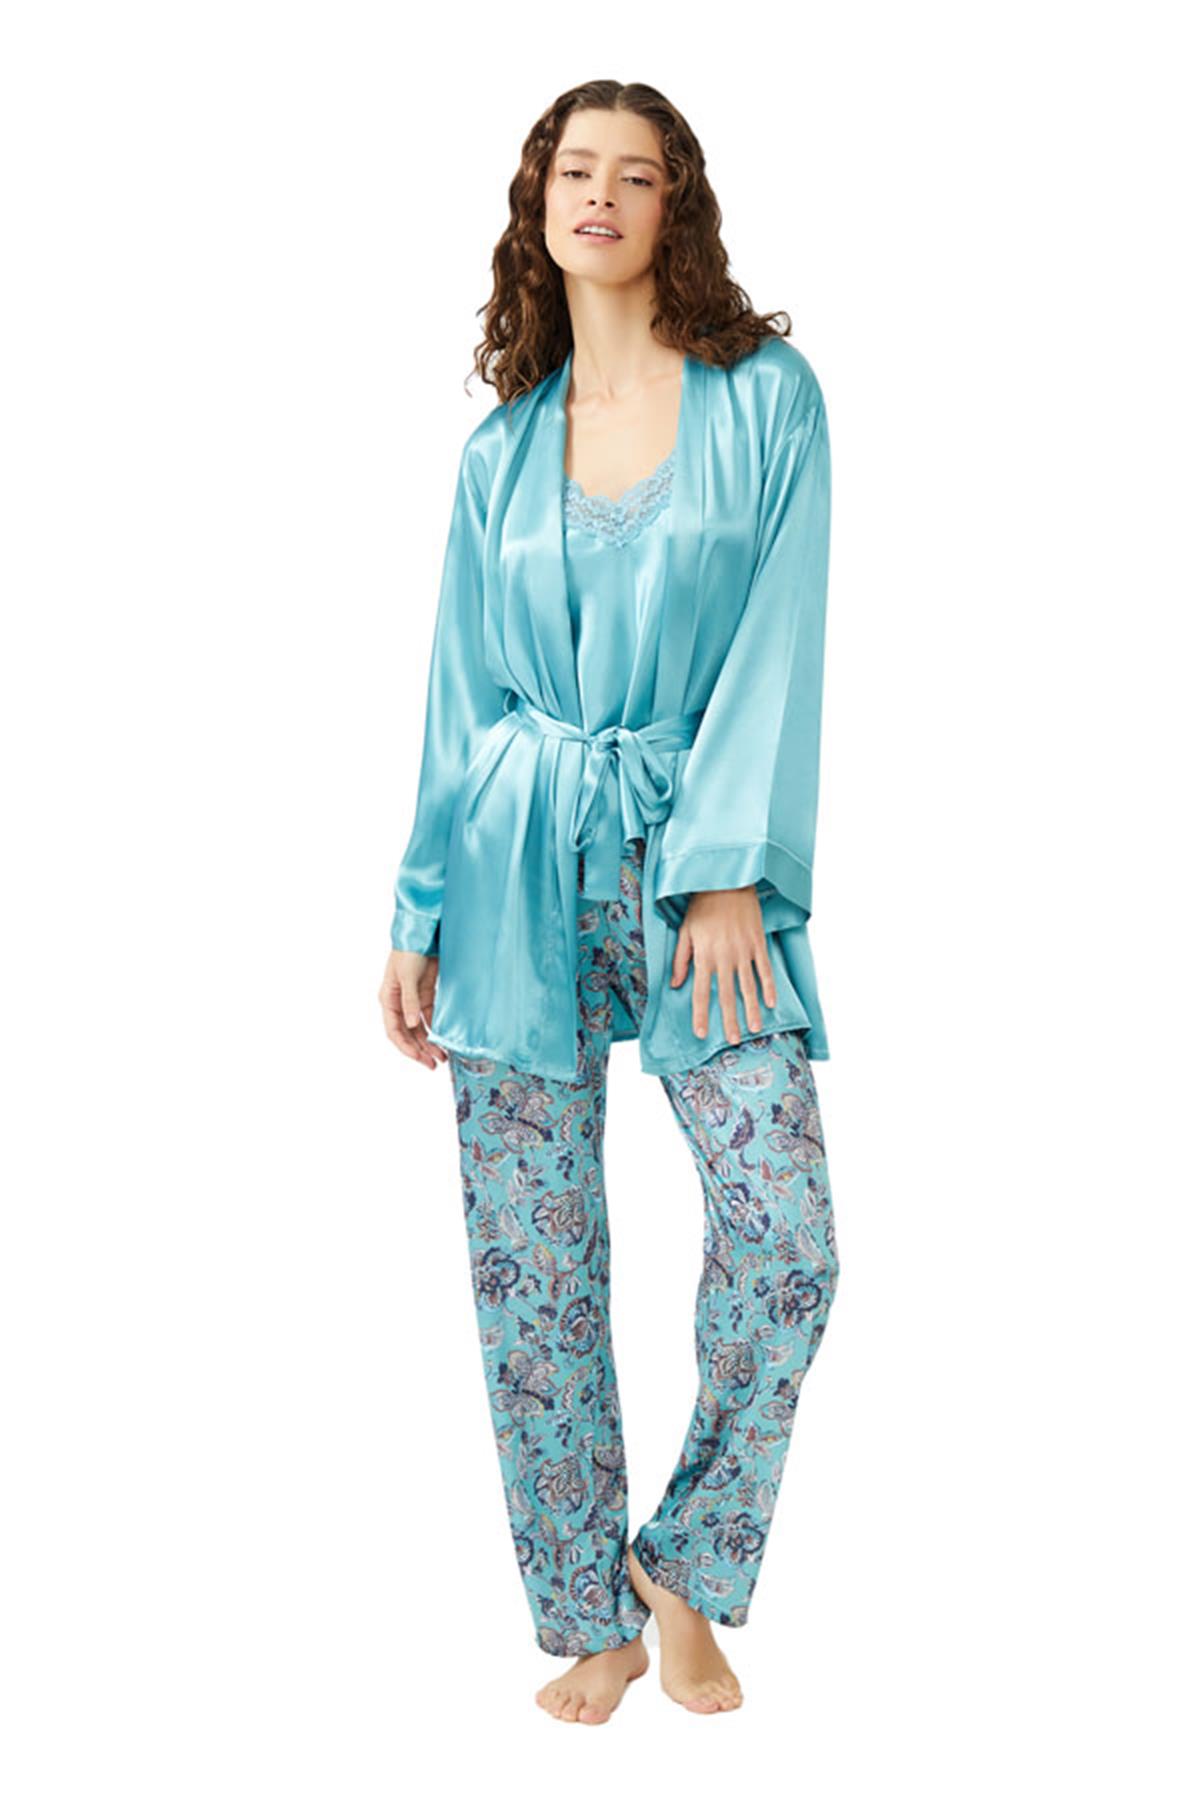 Kadın Pijama Takımı Modelleri (Bayan Gecelik Pijama) | Cottonhill